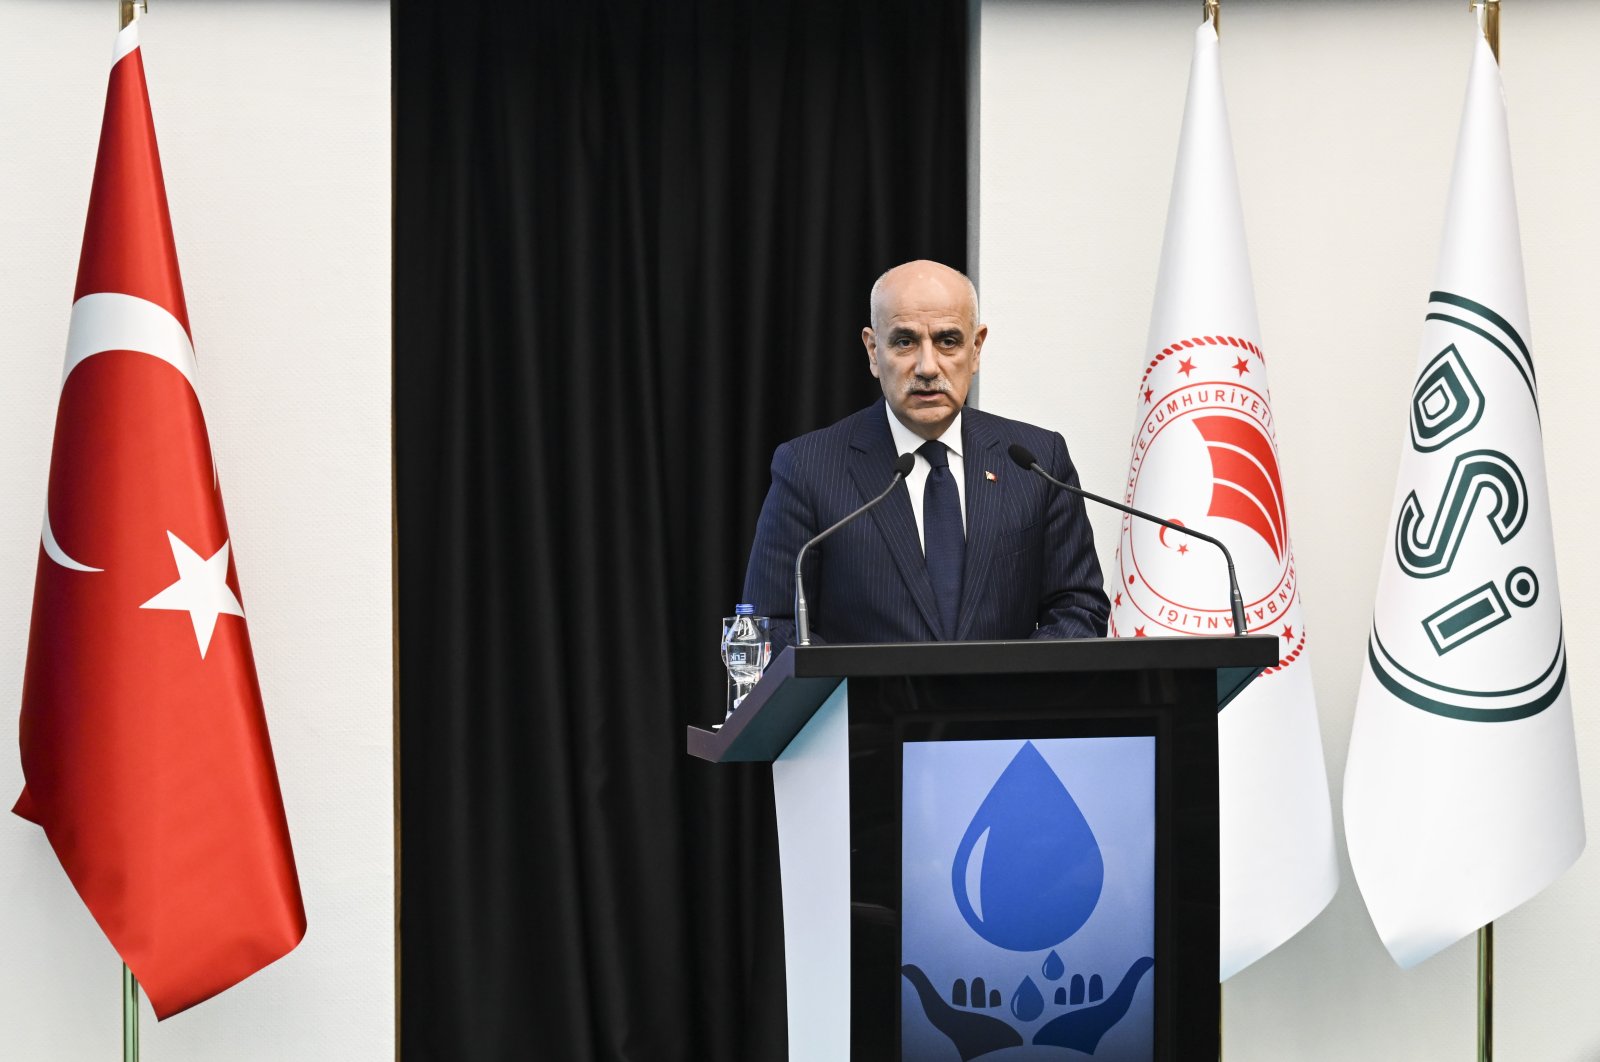 Türkiye mengumumkan 53 proyek baru untuk air minum